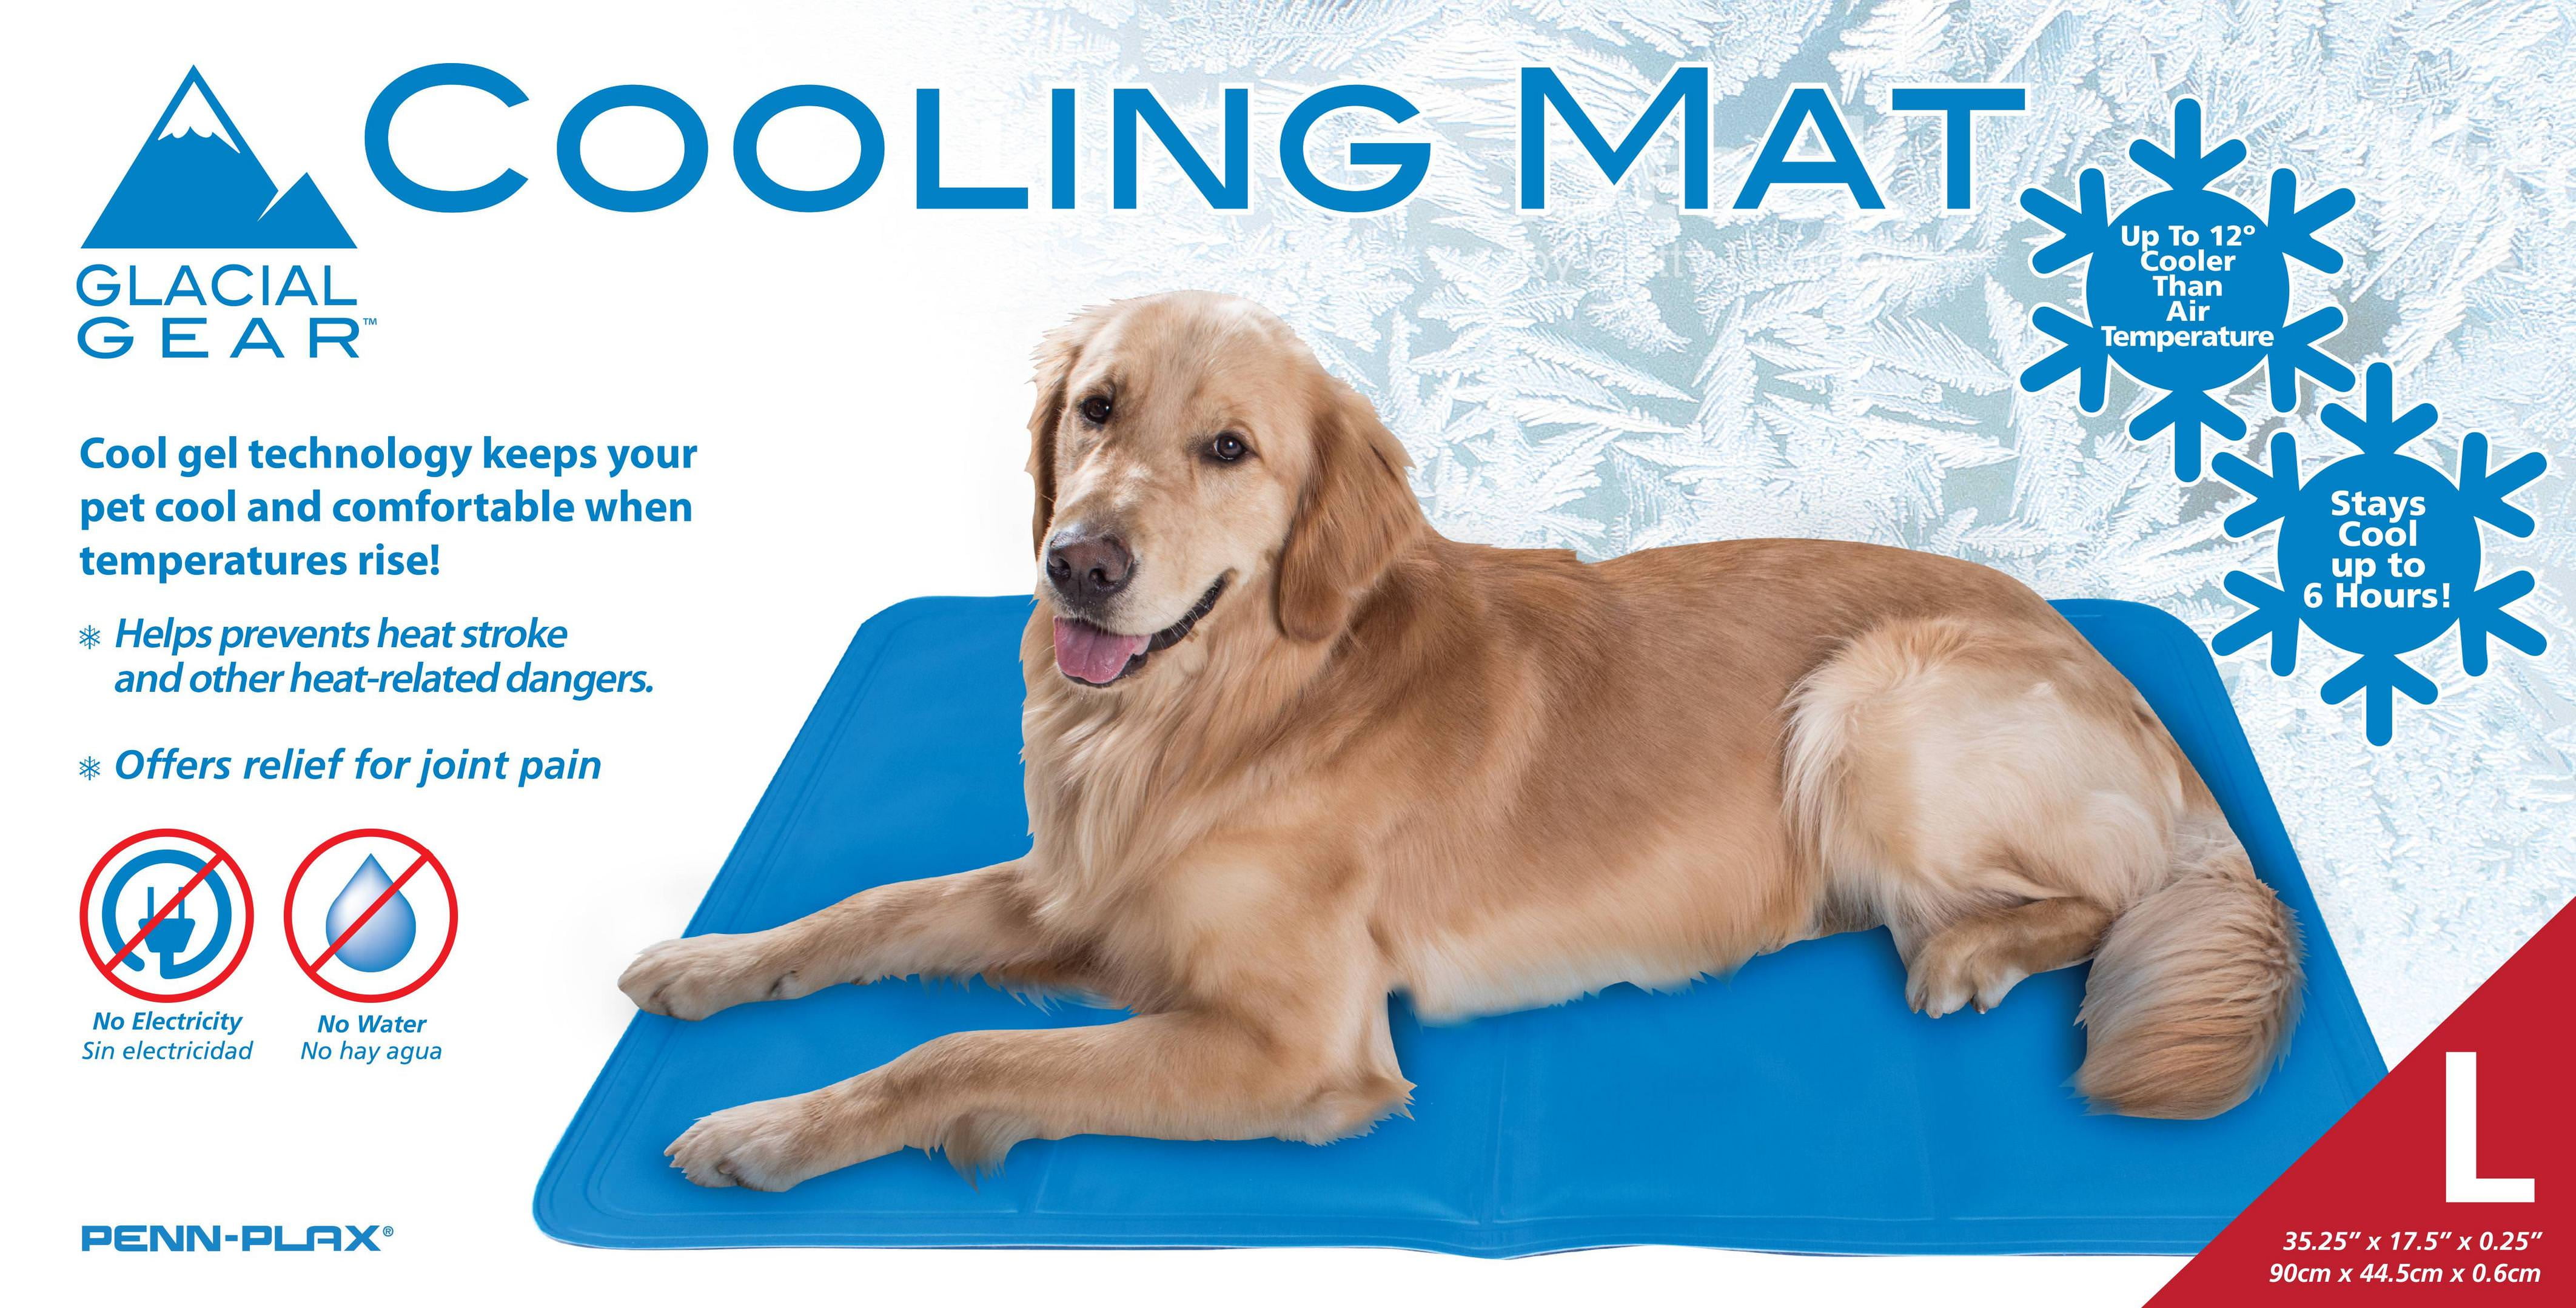 Glacier Gear Dog Cooling Mat - Large 